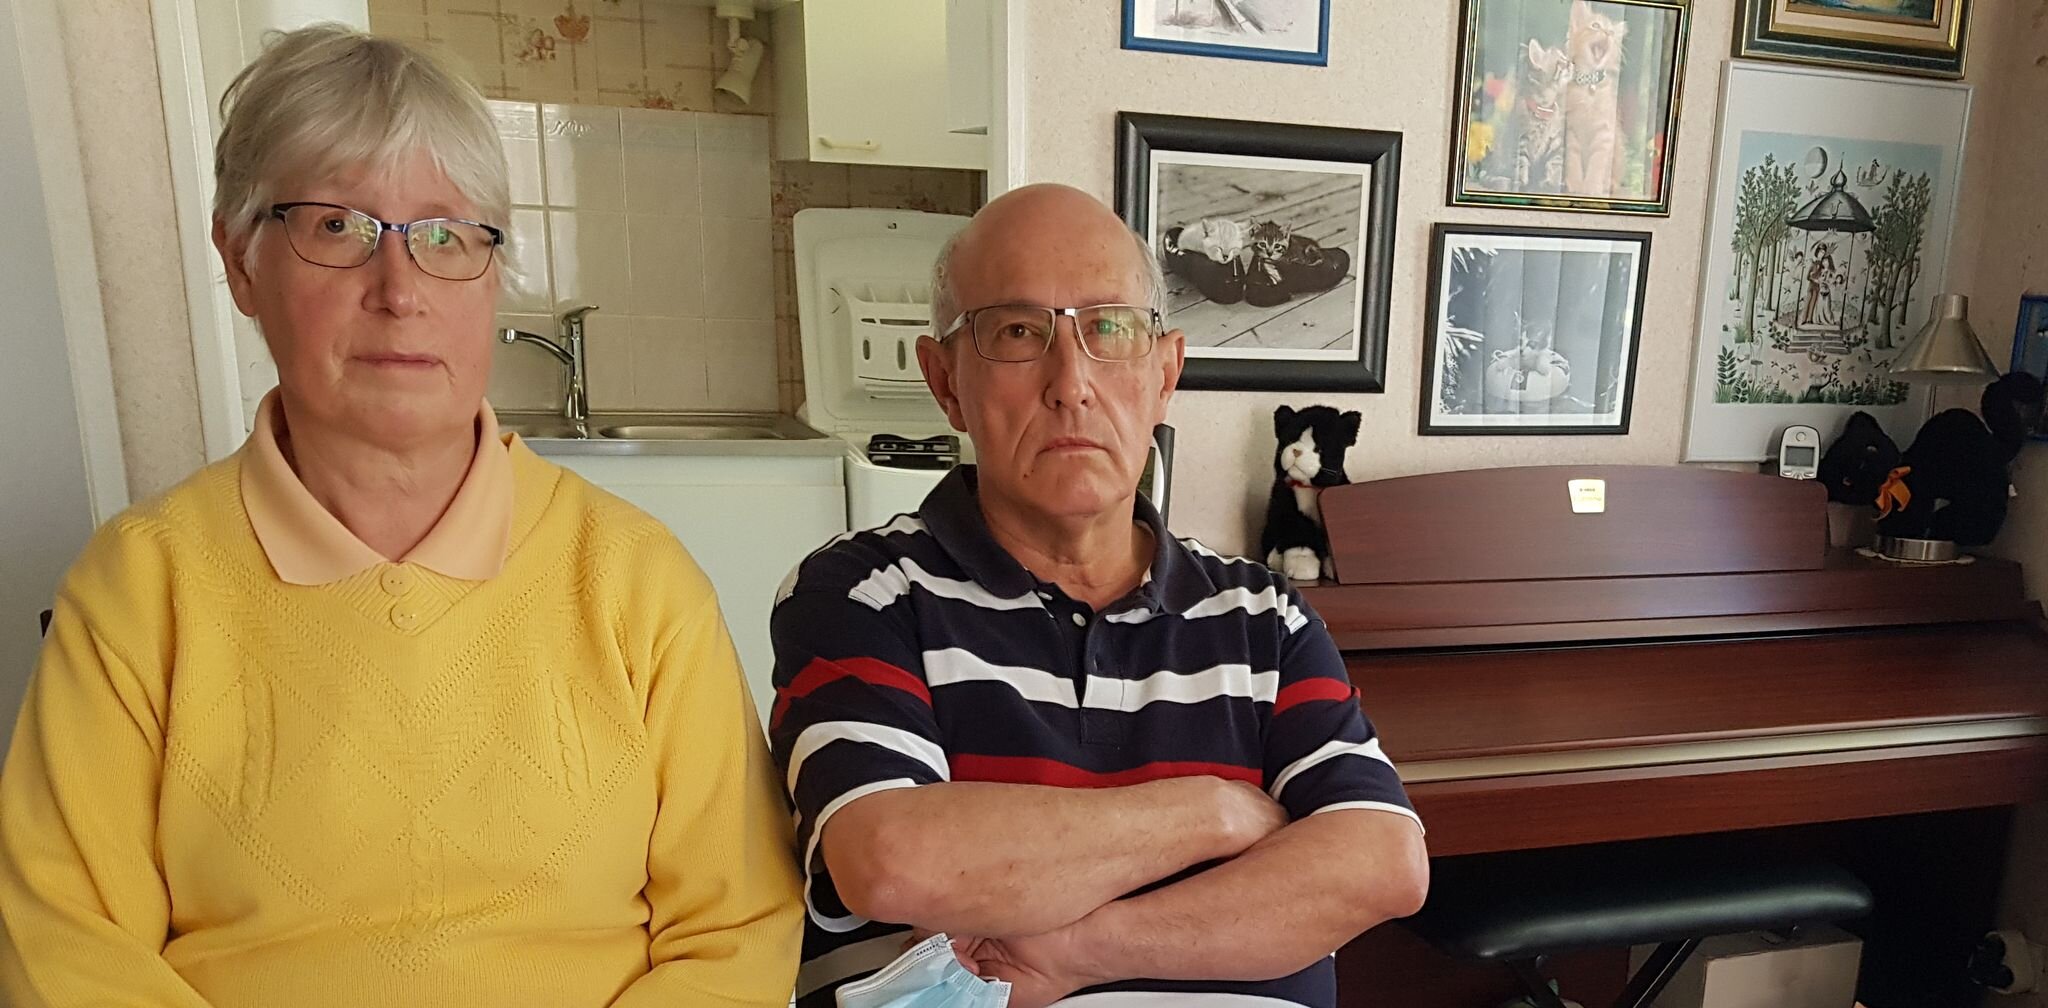 Ciblé par des menaces et tags antisémites depuis cinq ans, un couple de retraités subit l’indifférence